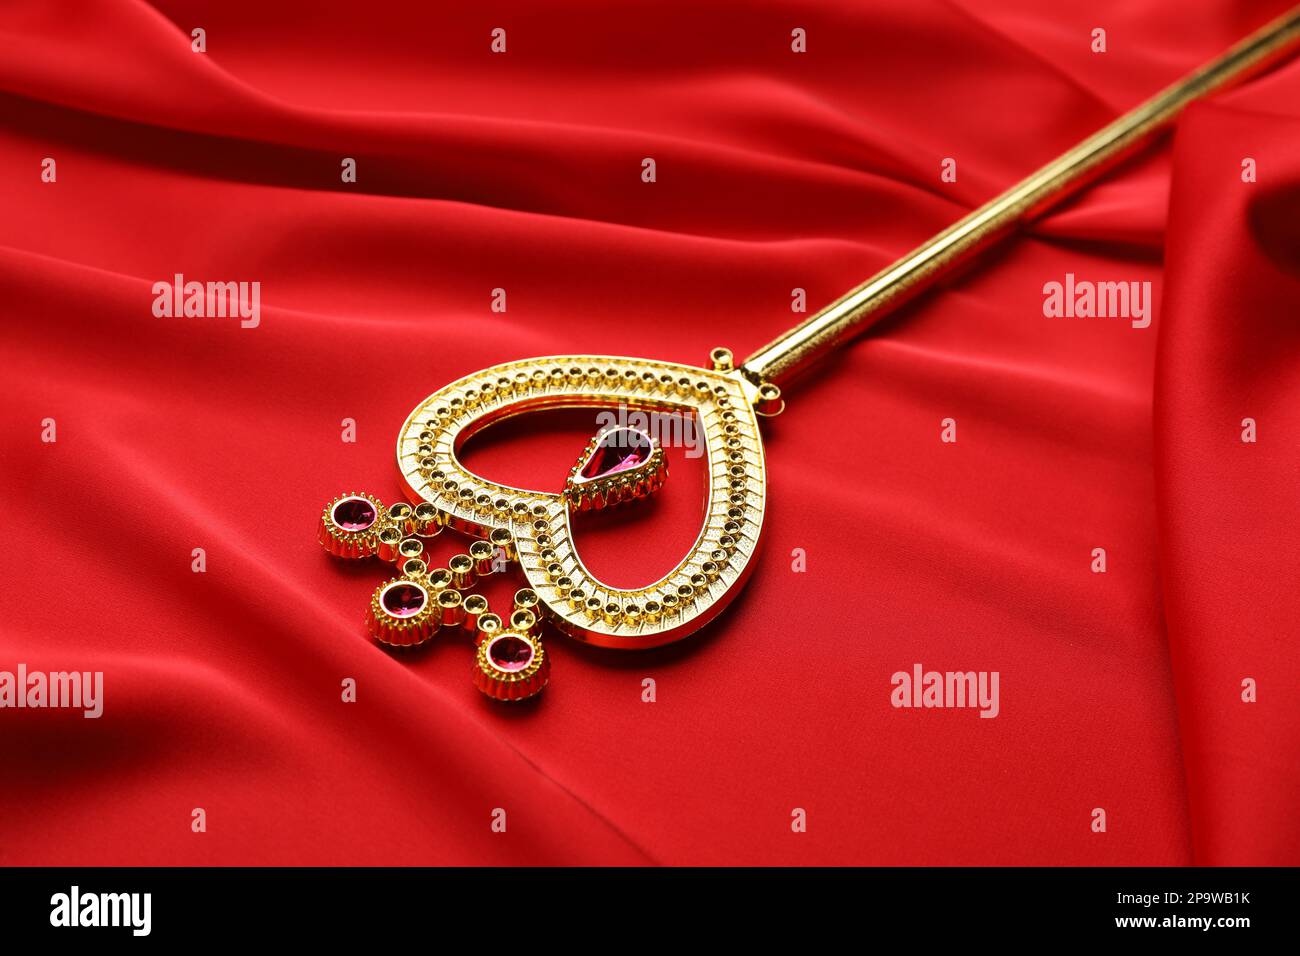 Bella bacchetta magica dorata su tessuto rosso, primo piano Foto Stock